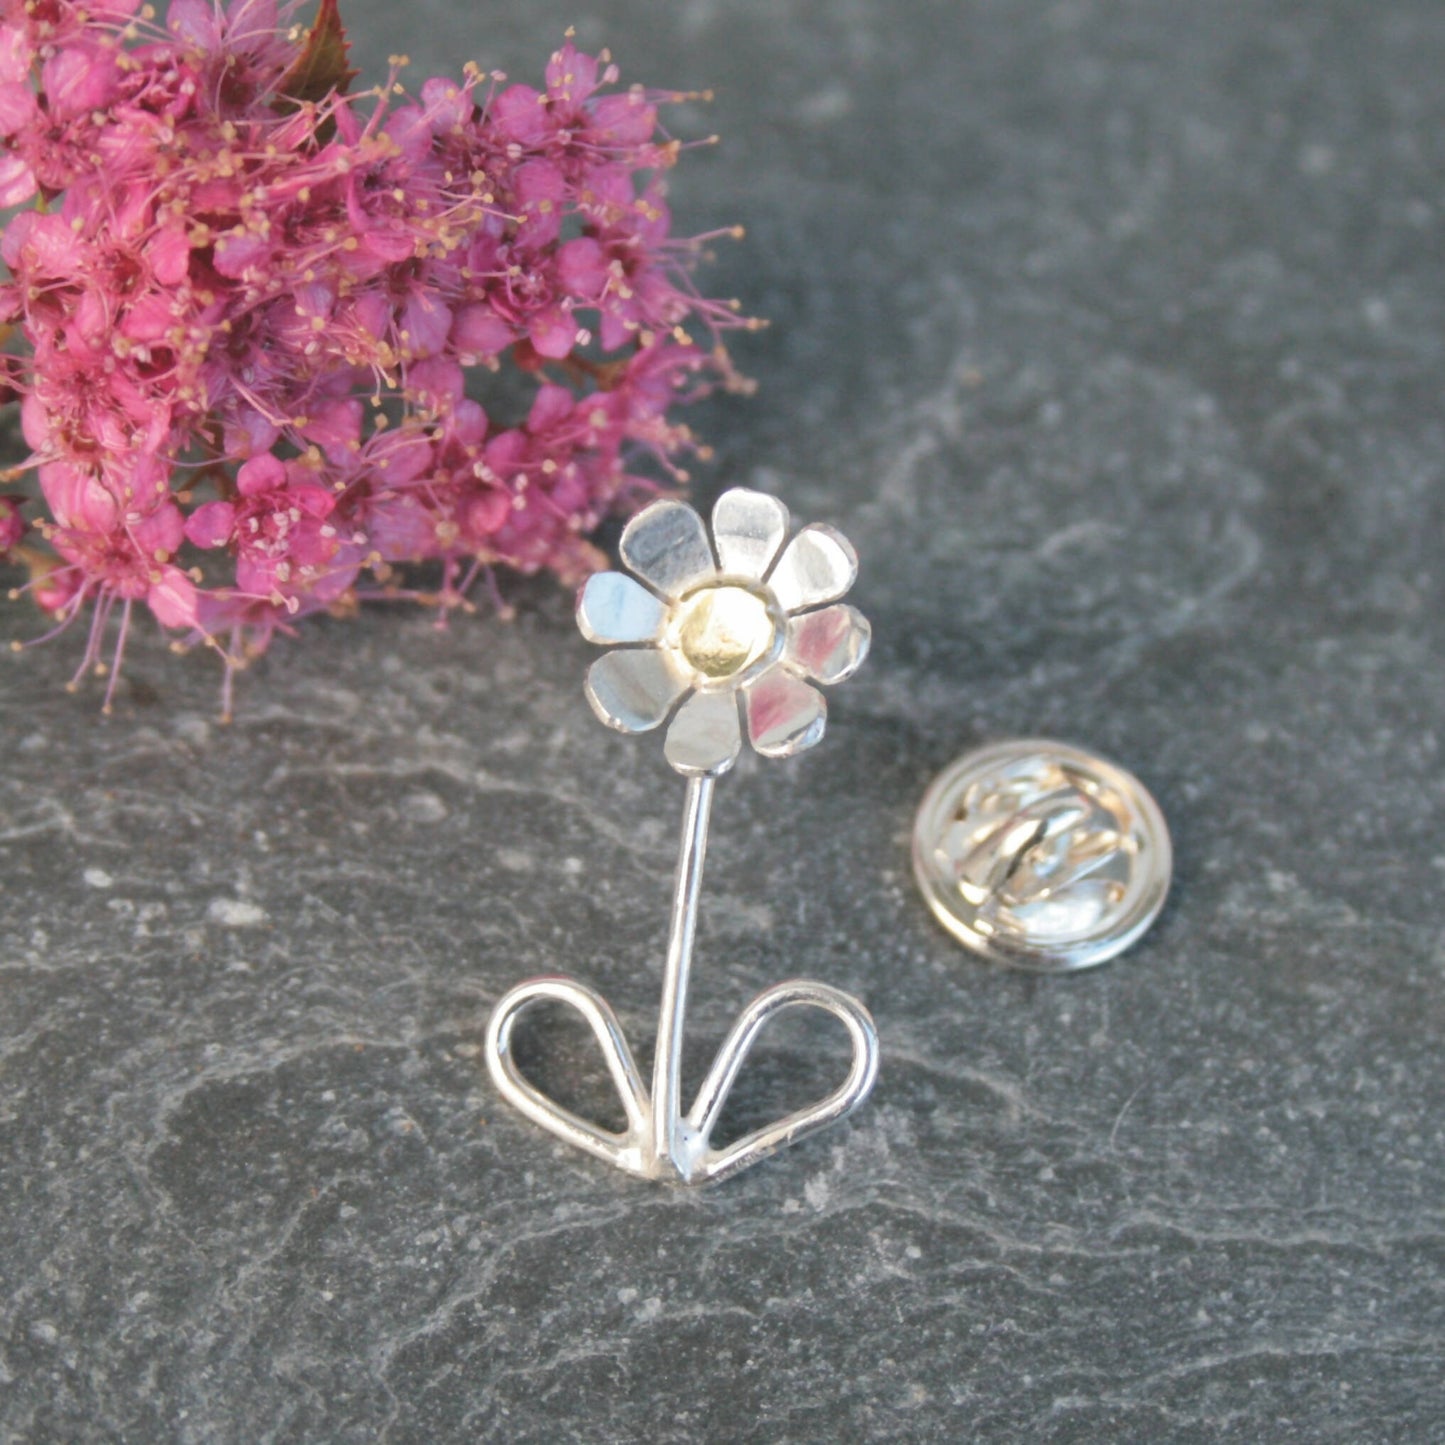 Sterling silver daisy brooch